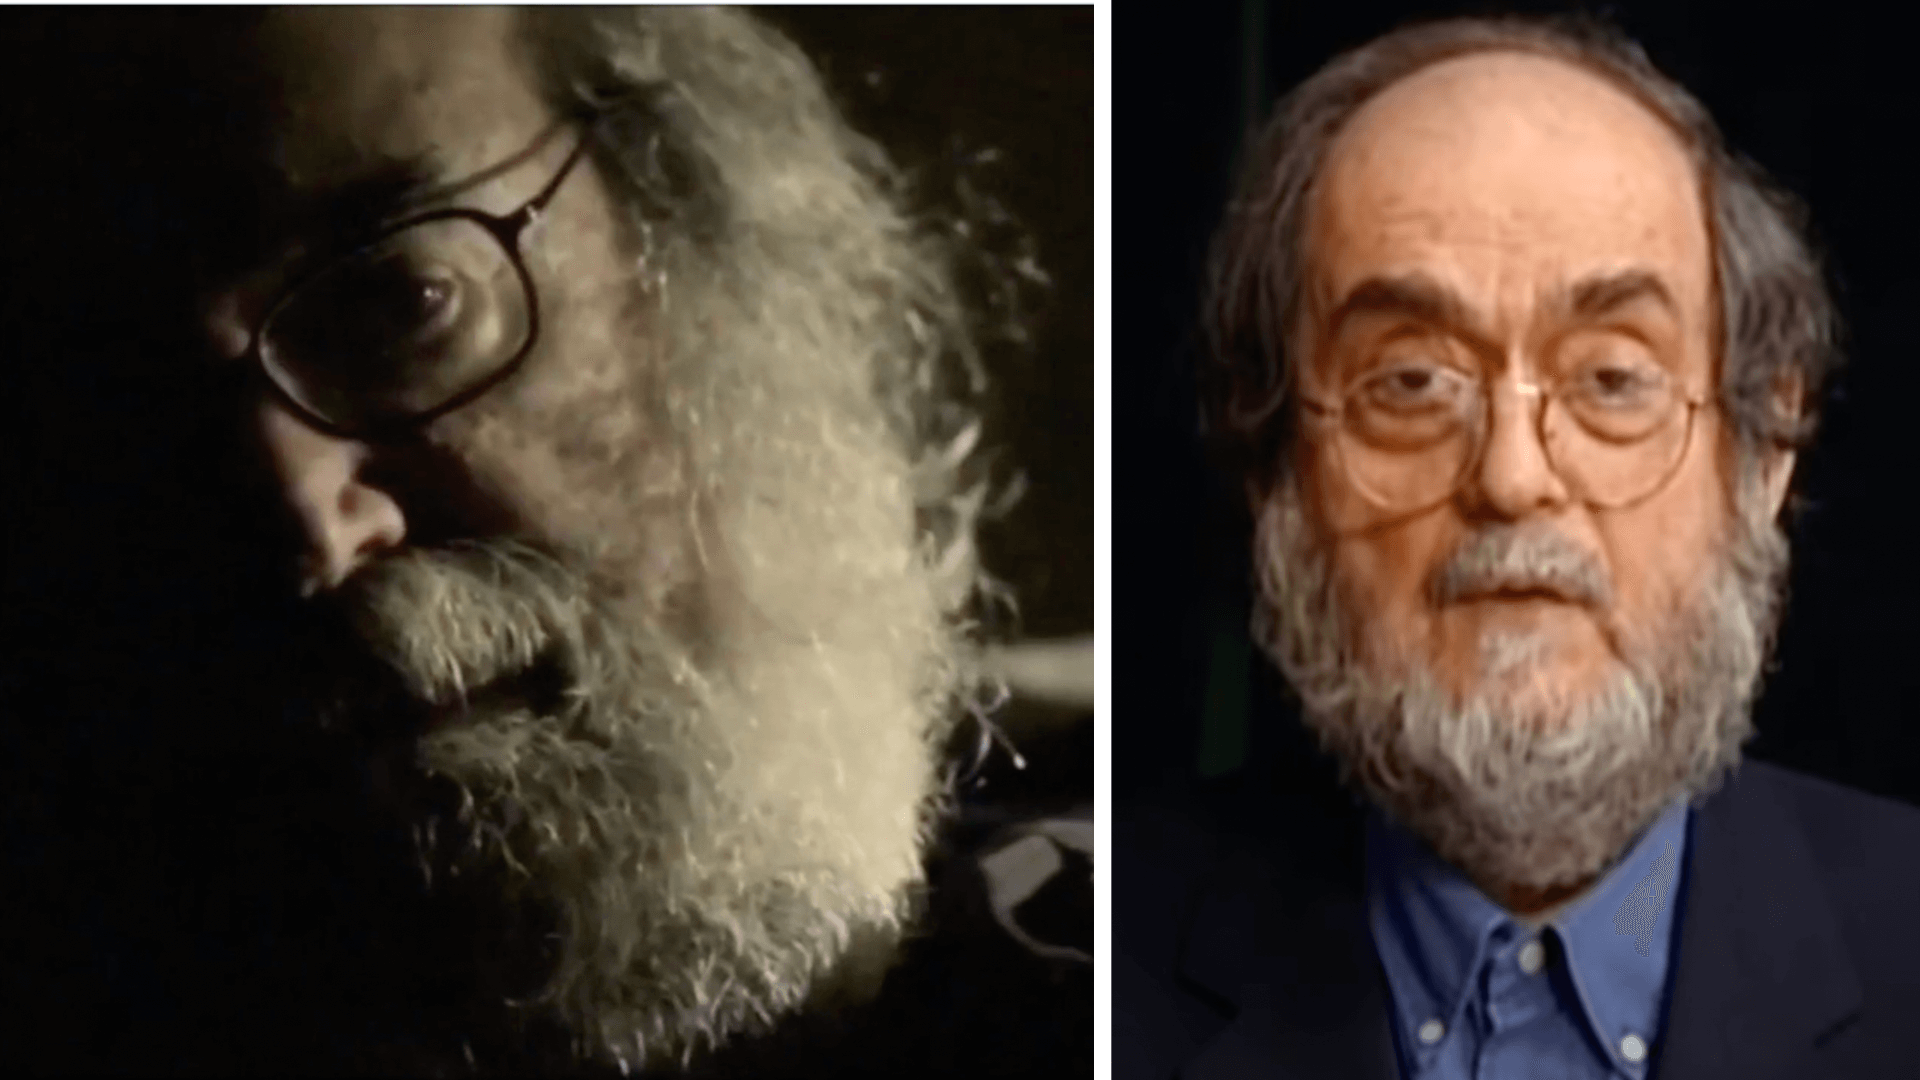 Ein Vergleich der gefälschten Aufnahmen mit authentischen Aufnahmen von Stanley Kubrick zeigt, dass die Männer sich in vielen Aspekten unterscheiden: Frisur, Haarfarbe, Bartwuchs, Brille und die Form der Augenbrauen passen nicht zusammen